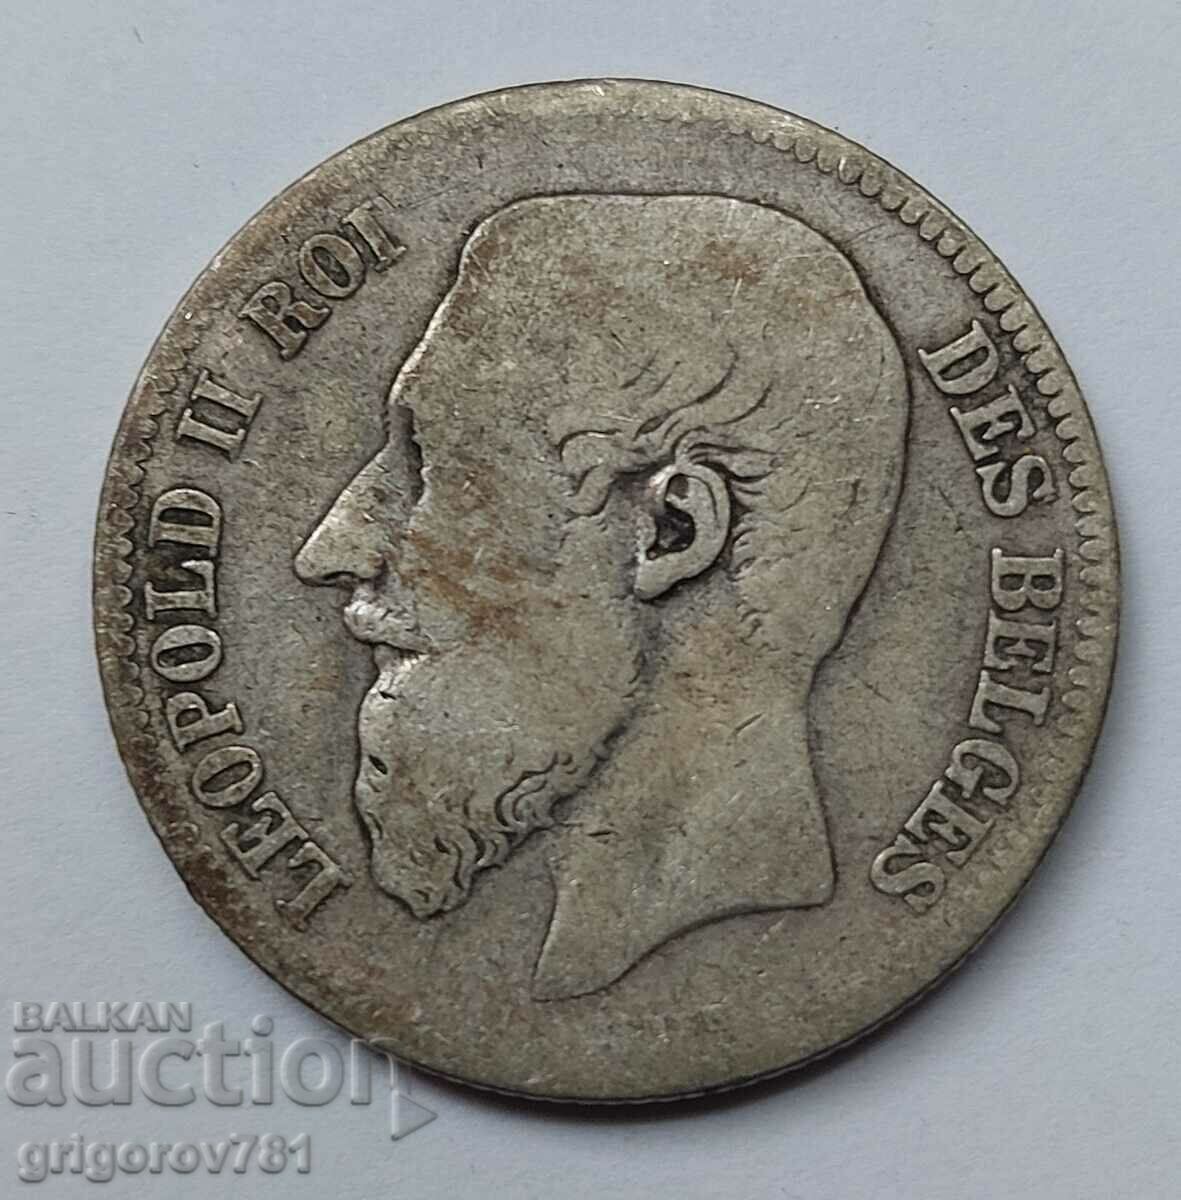 Ασημένιο 2 Φράγκα Βέλγιο 1866 - Ασημένιο νόμισμα #161